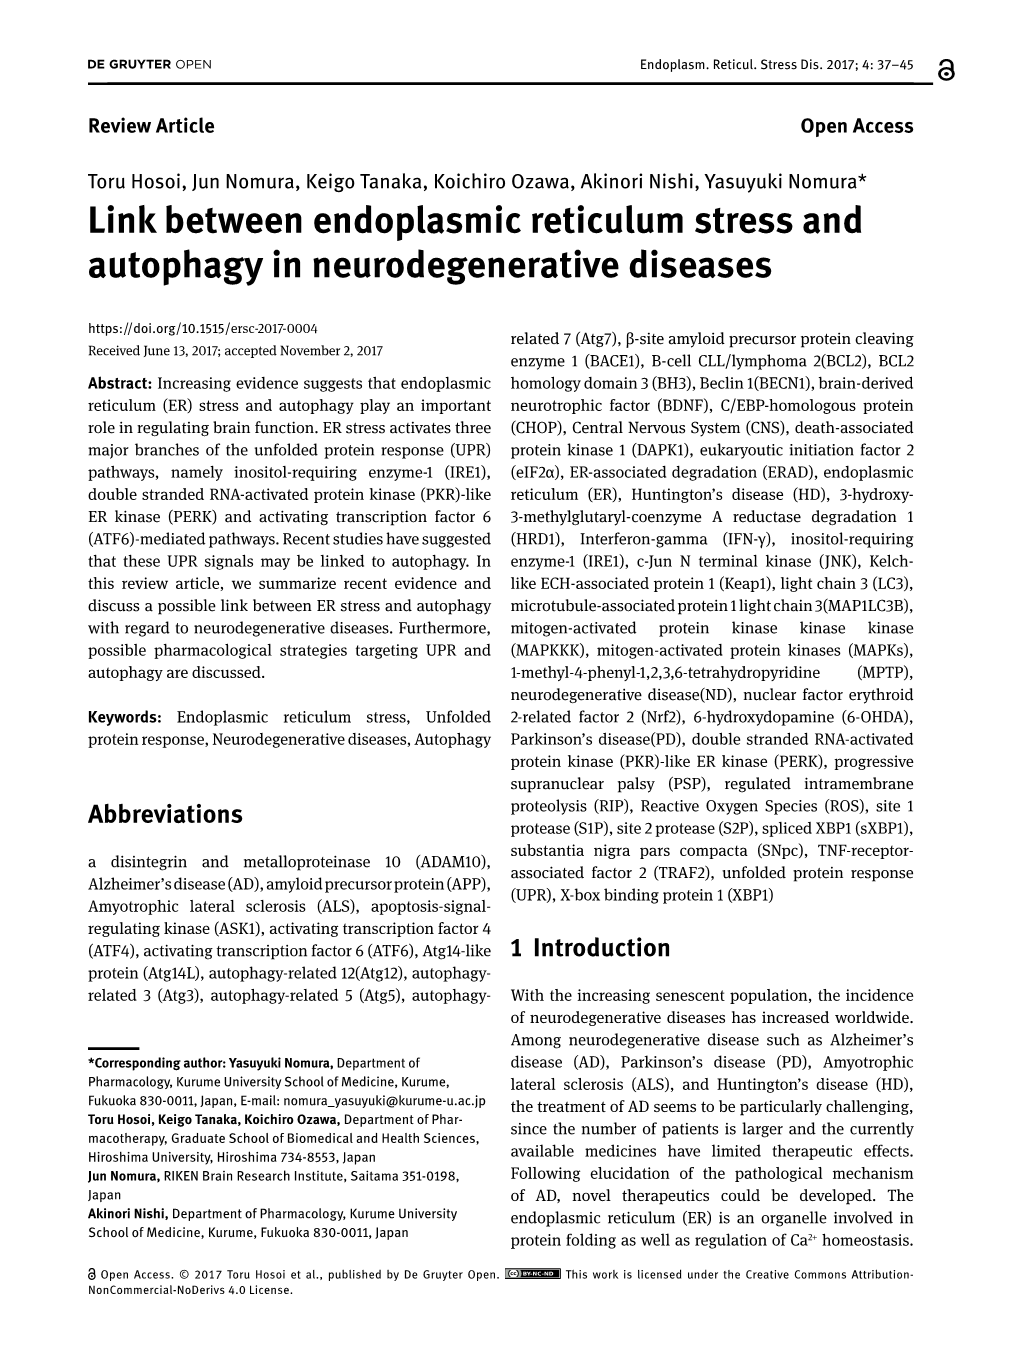 Link Between Endoplasmic Reticulum Stress and Autophagy In